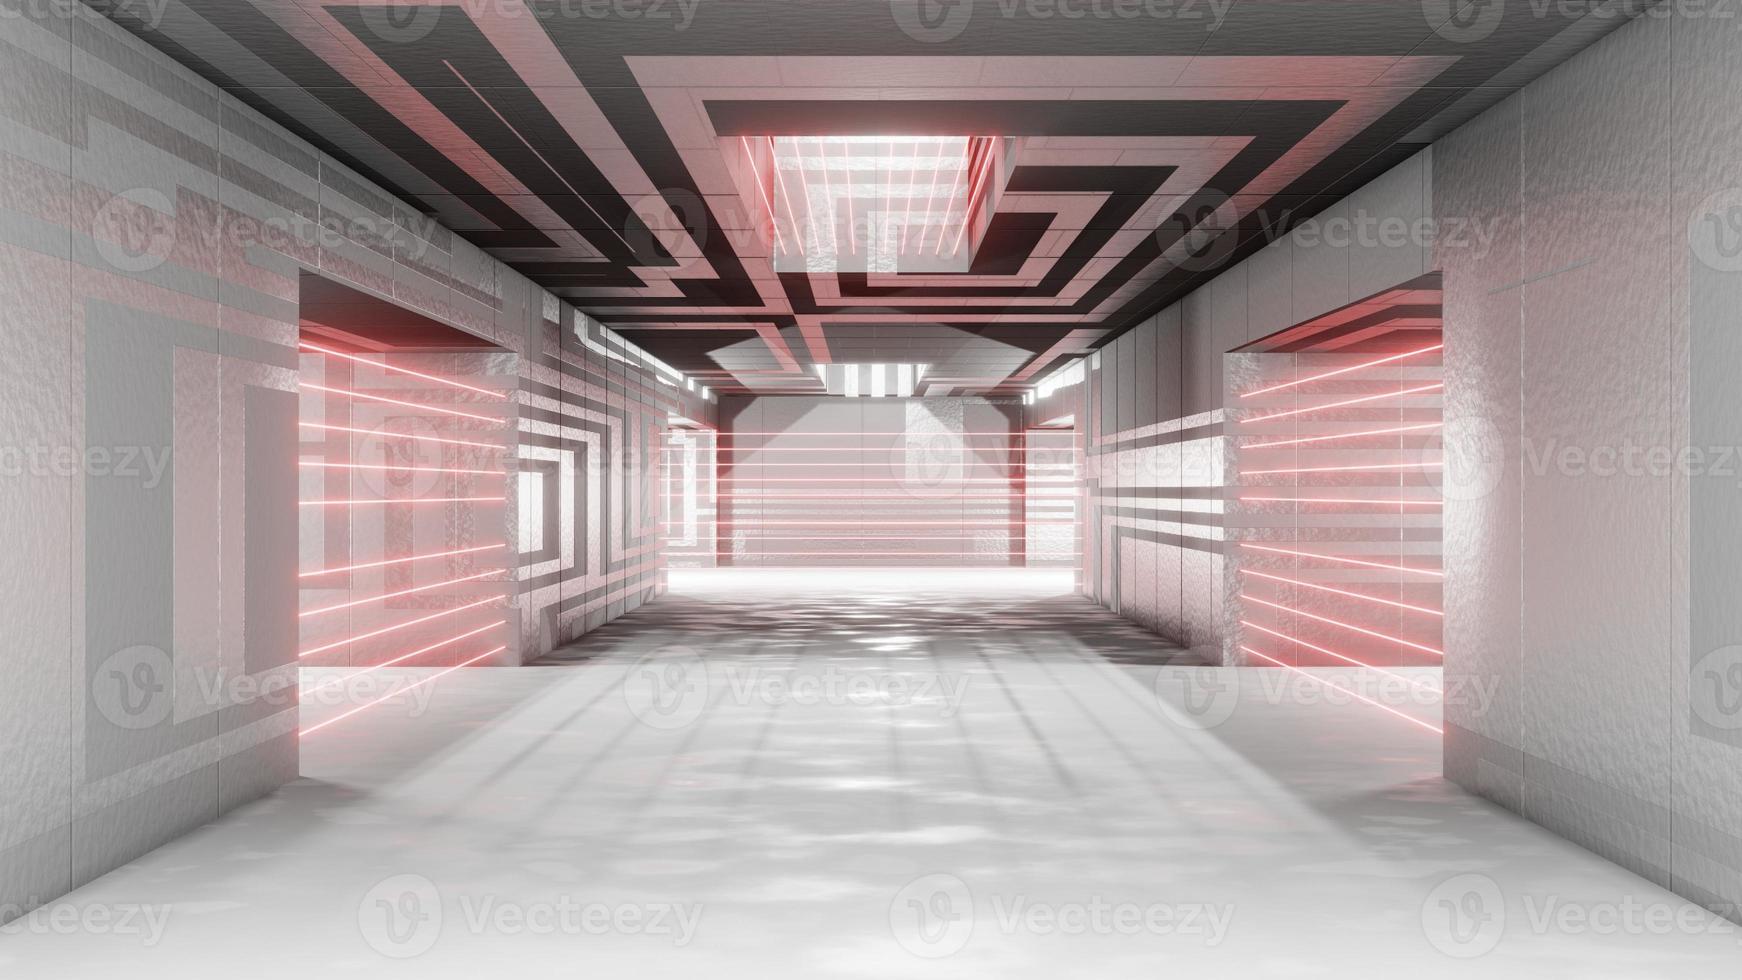 sci fi interior futurista quarto laser alarme proteção segurança prisão corredor garagem alienígena nave espacial tubos comunicação brilhante néon nevoeiro renderização em 3d foto